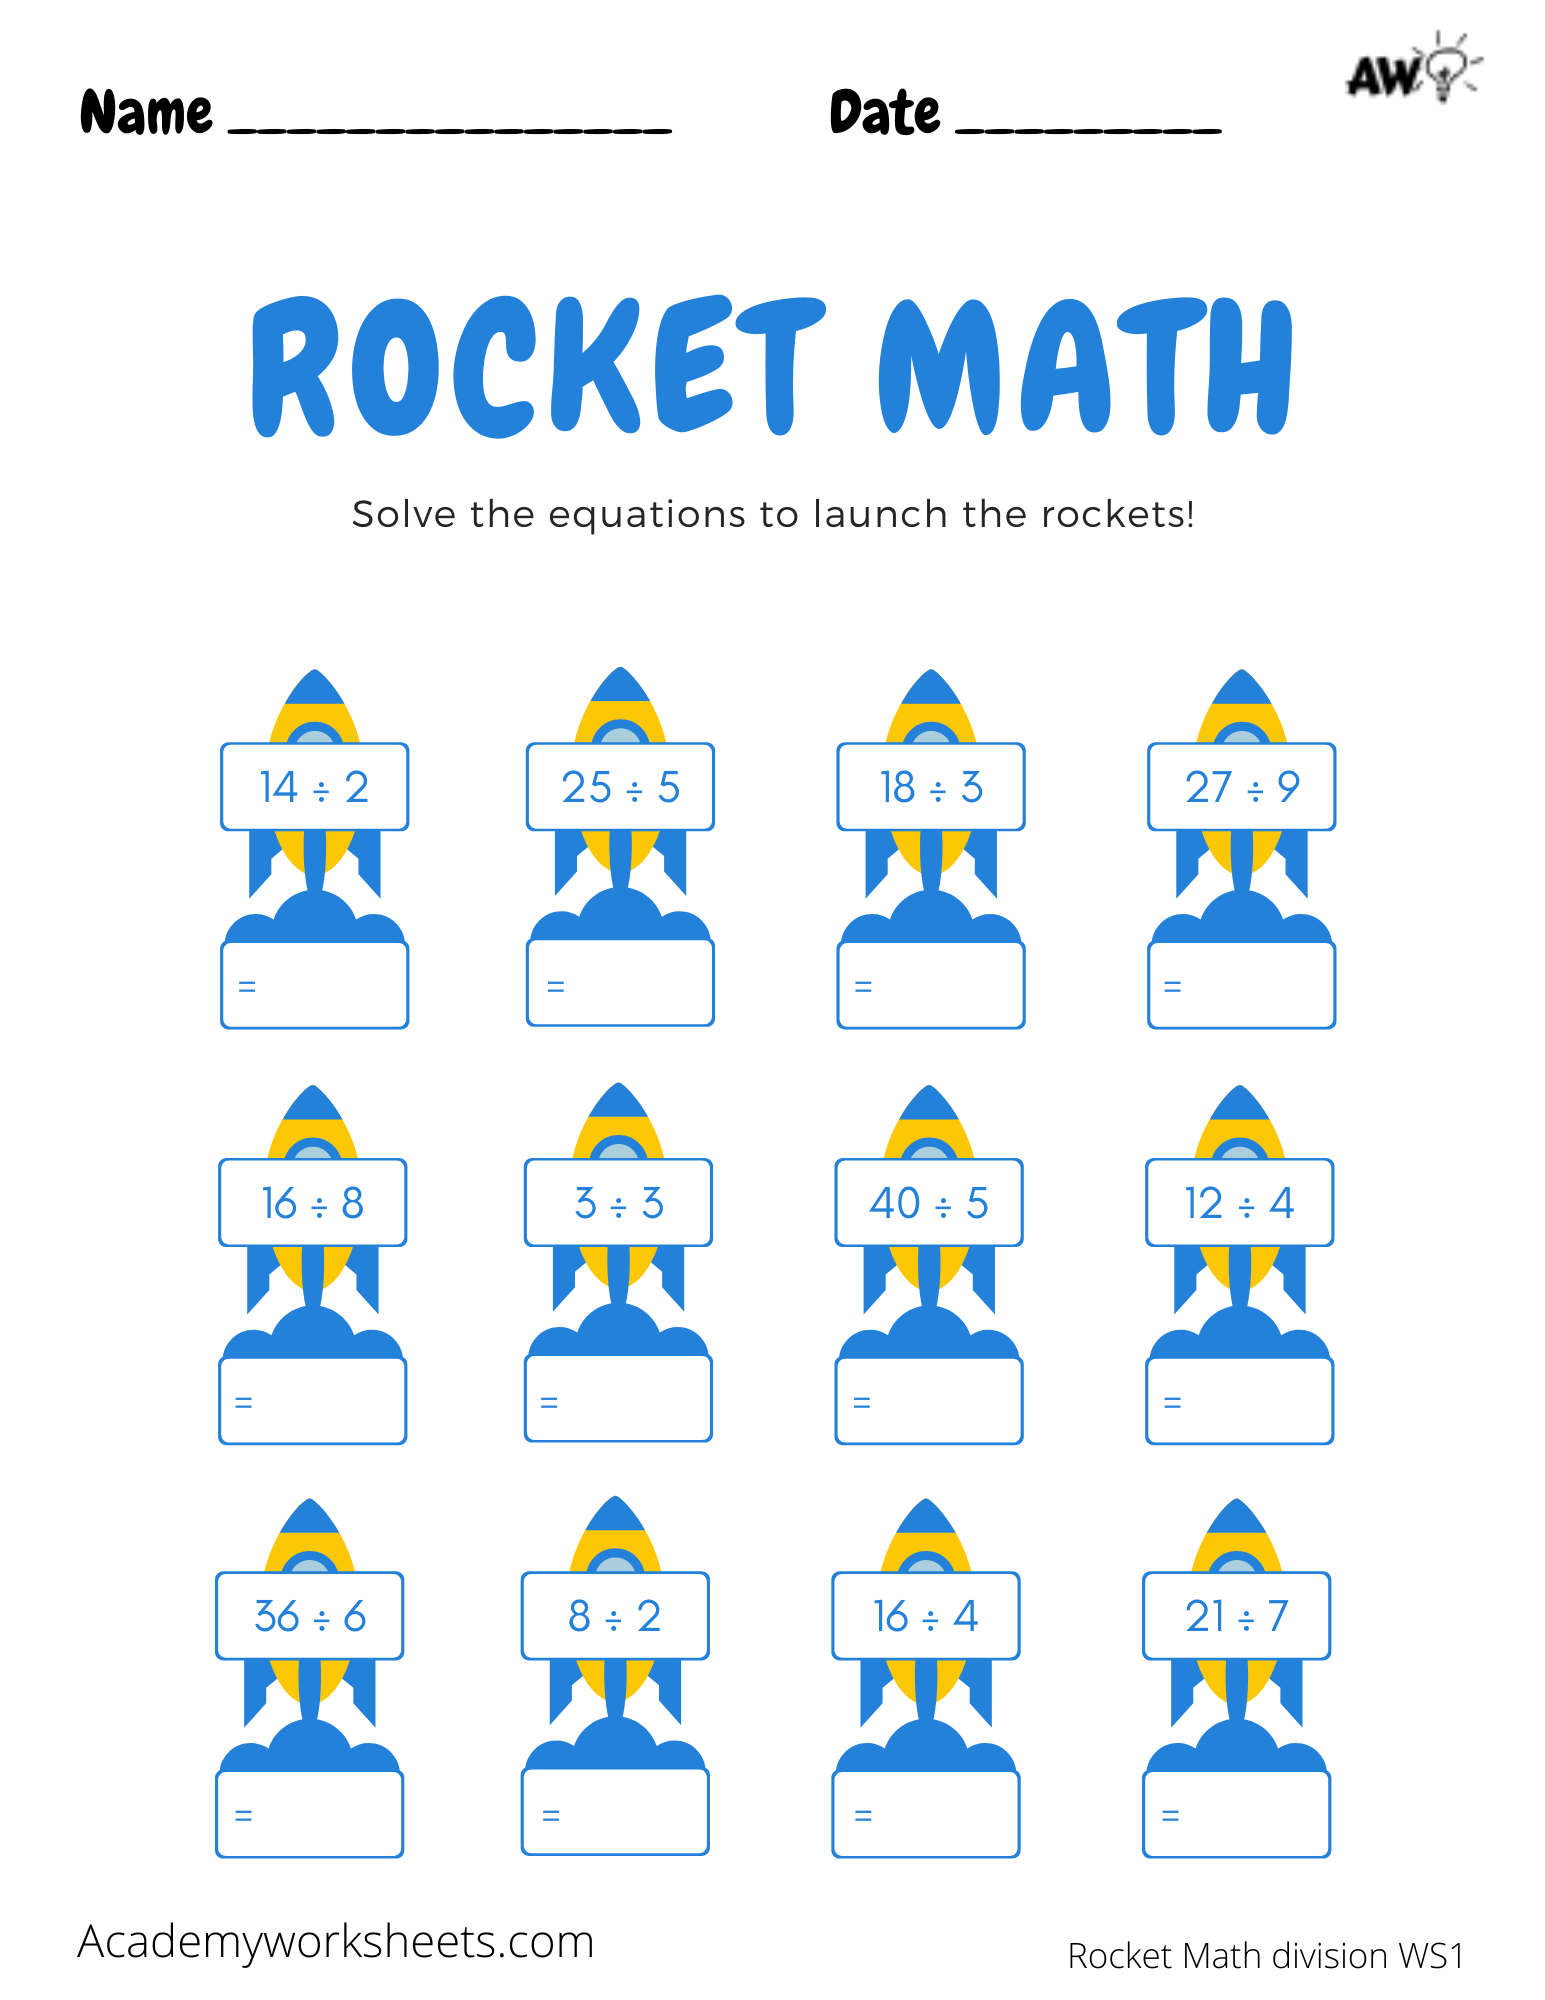 Rocket Math Worksheets Division Academy Worksheets